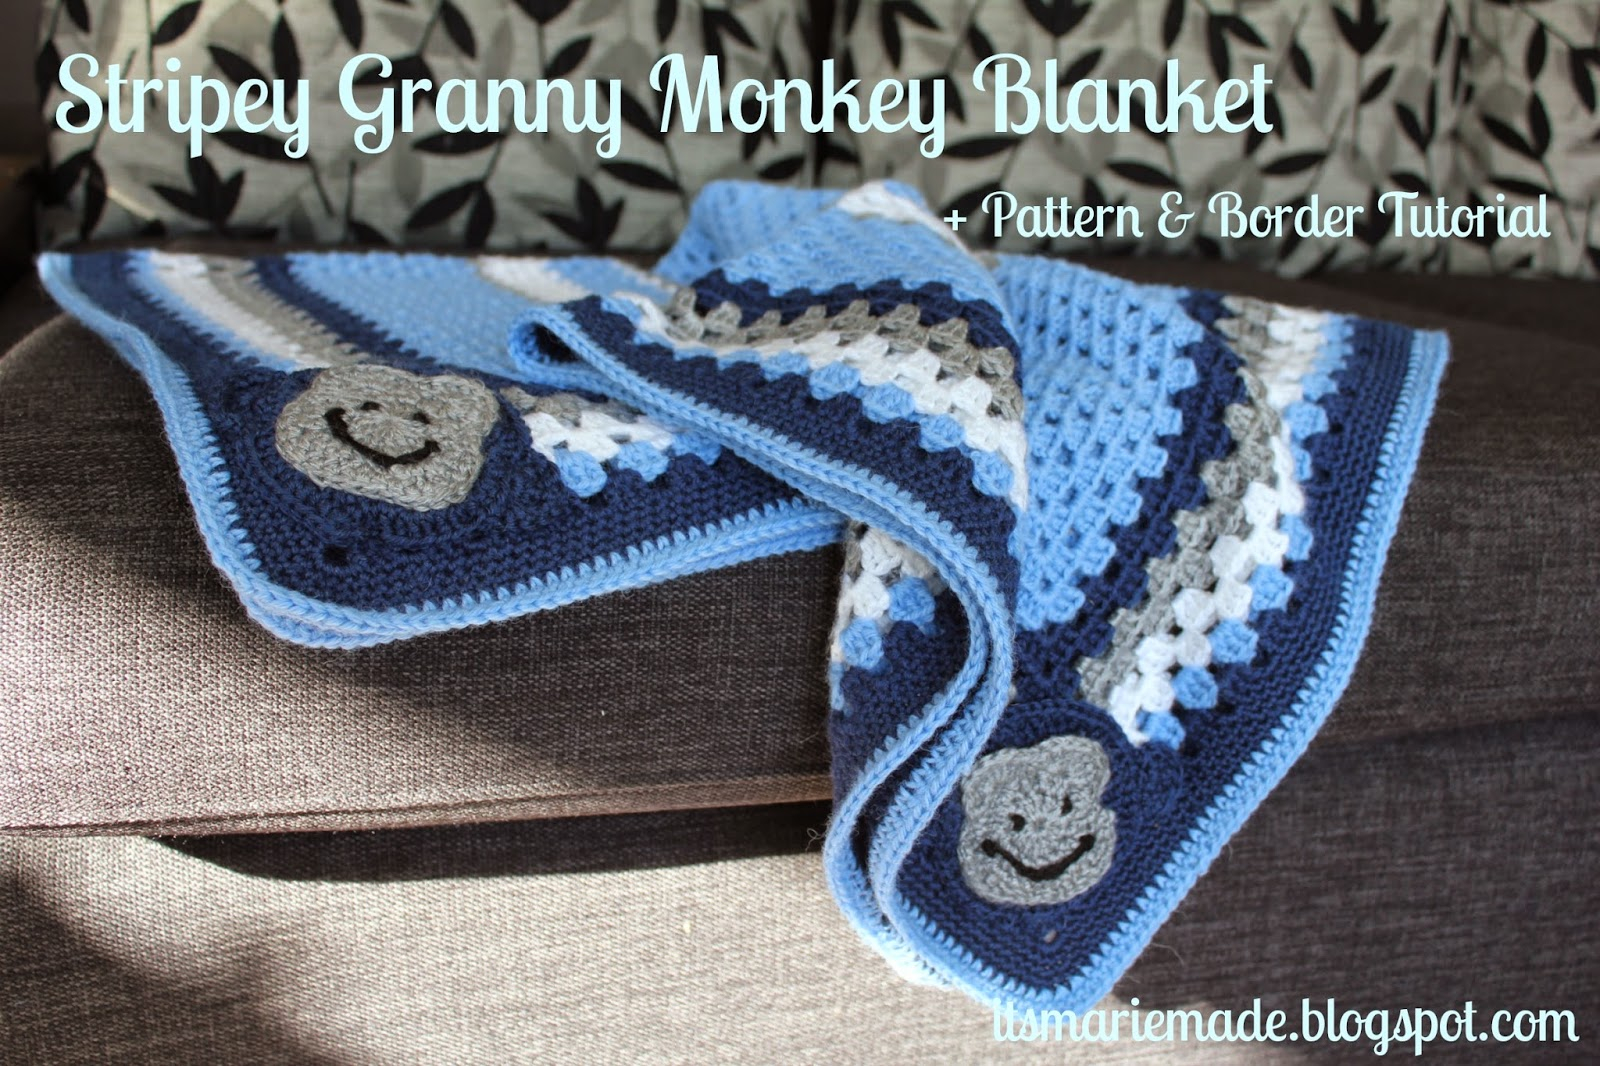 Crochet Monkey Blanket Pattern Its Marie Made Stripey Crochet Granny Monkey Blanket Pattern